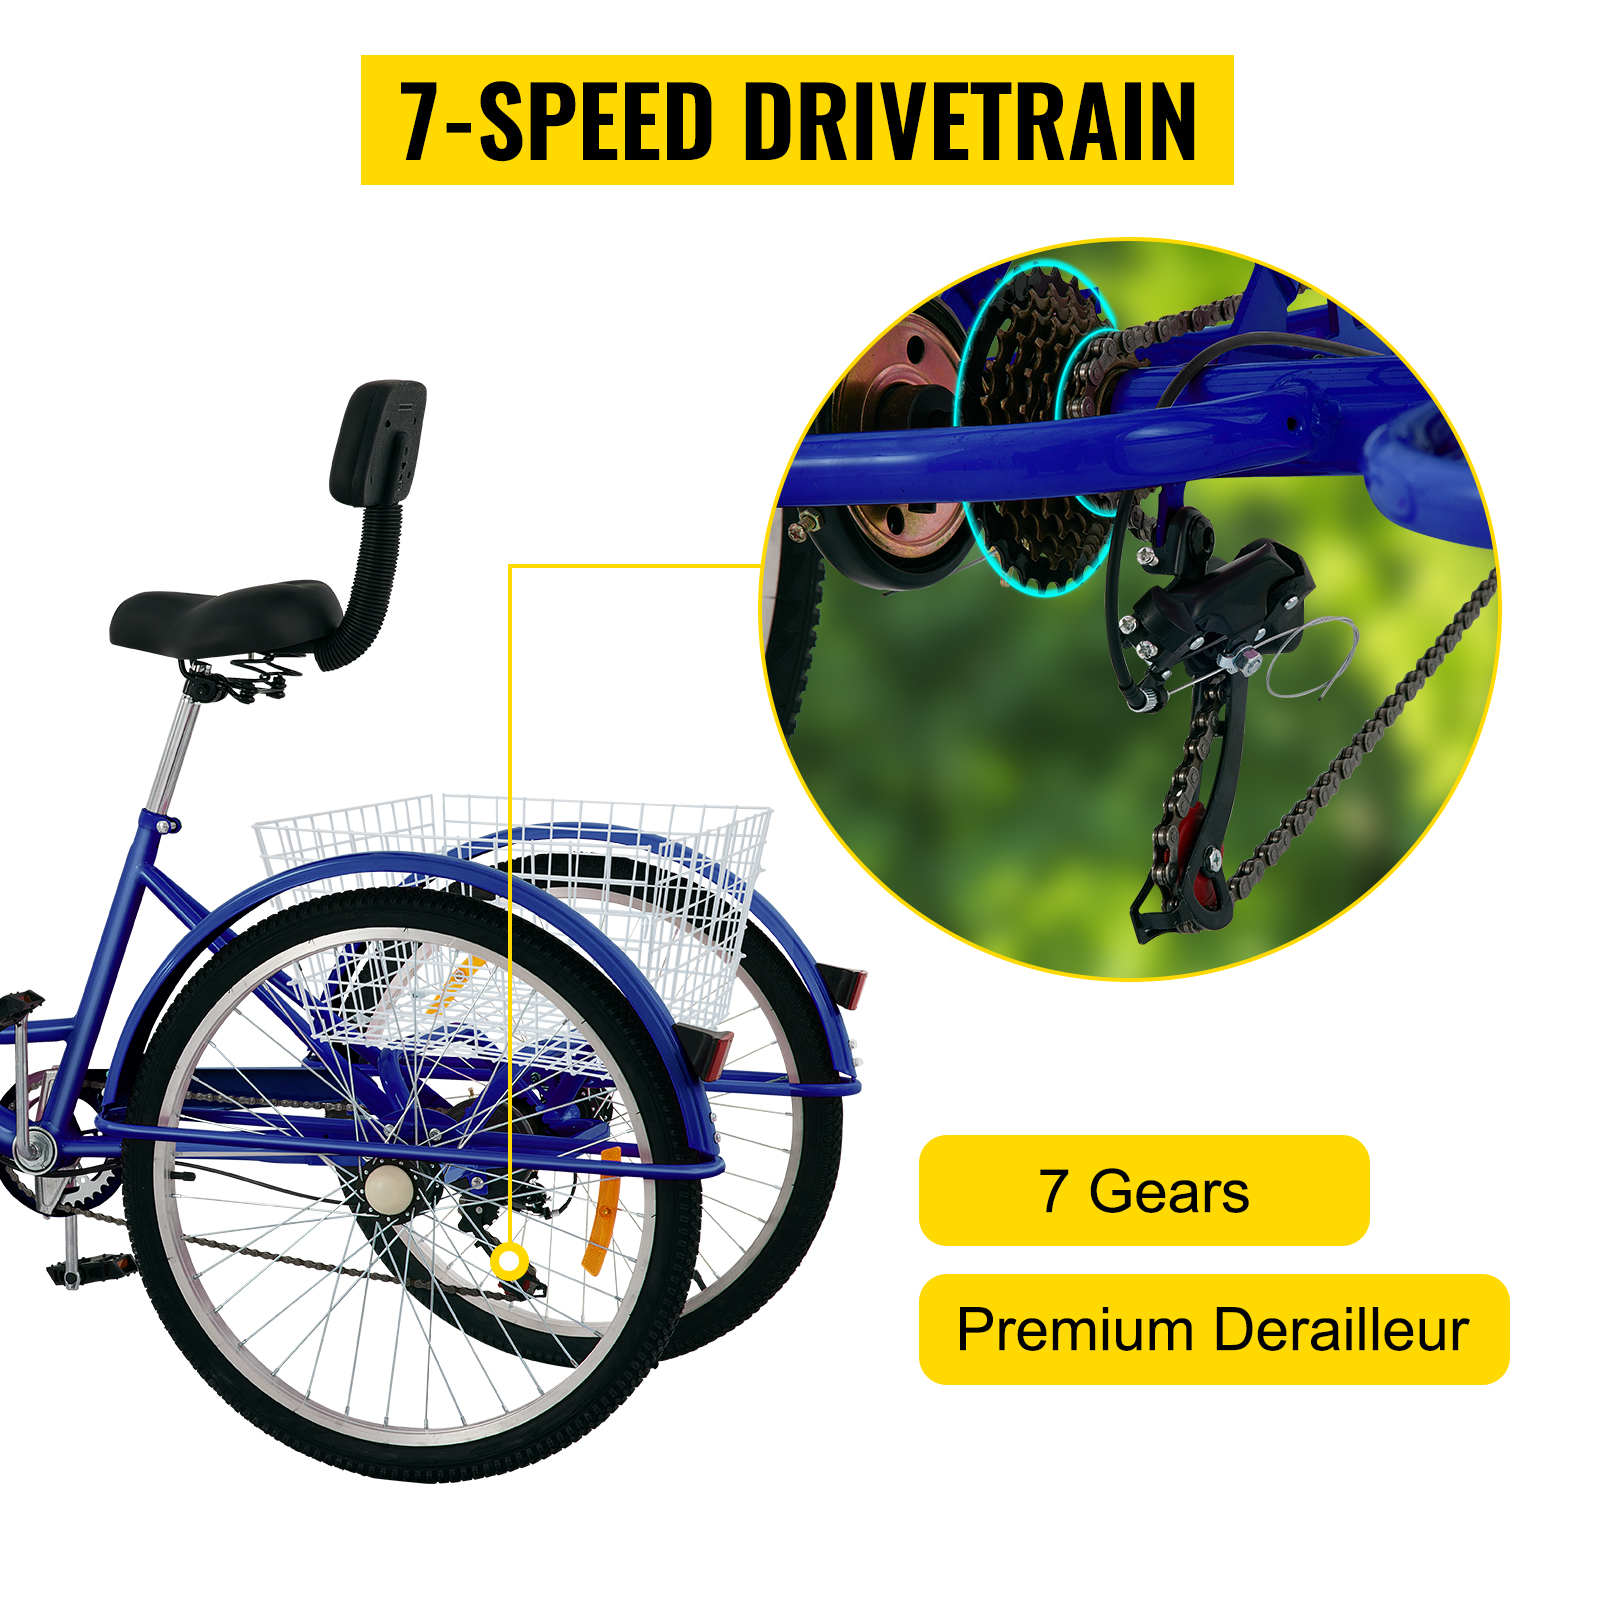 Triciclo para adultos, triciclo para bicicletas de 3 ruedas, triciclos  plegables para adultos, triciclos de 6 velocidades para adultos de 20  pulgadas